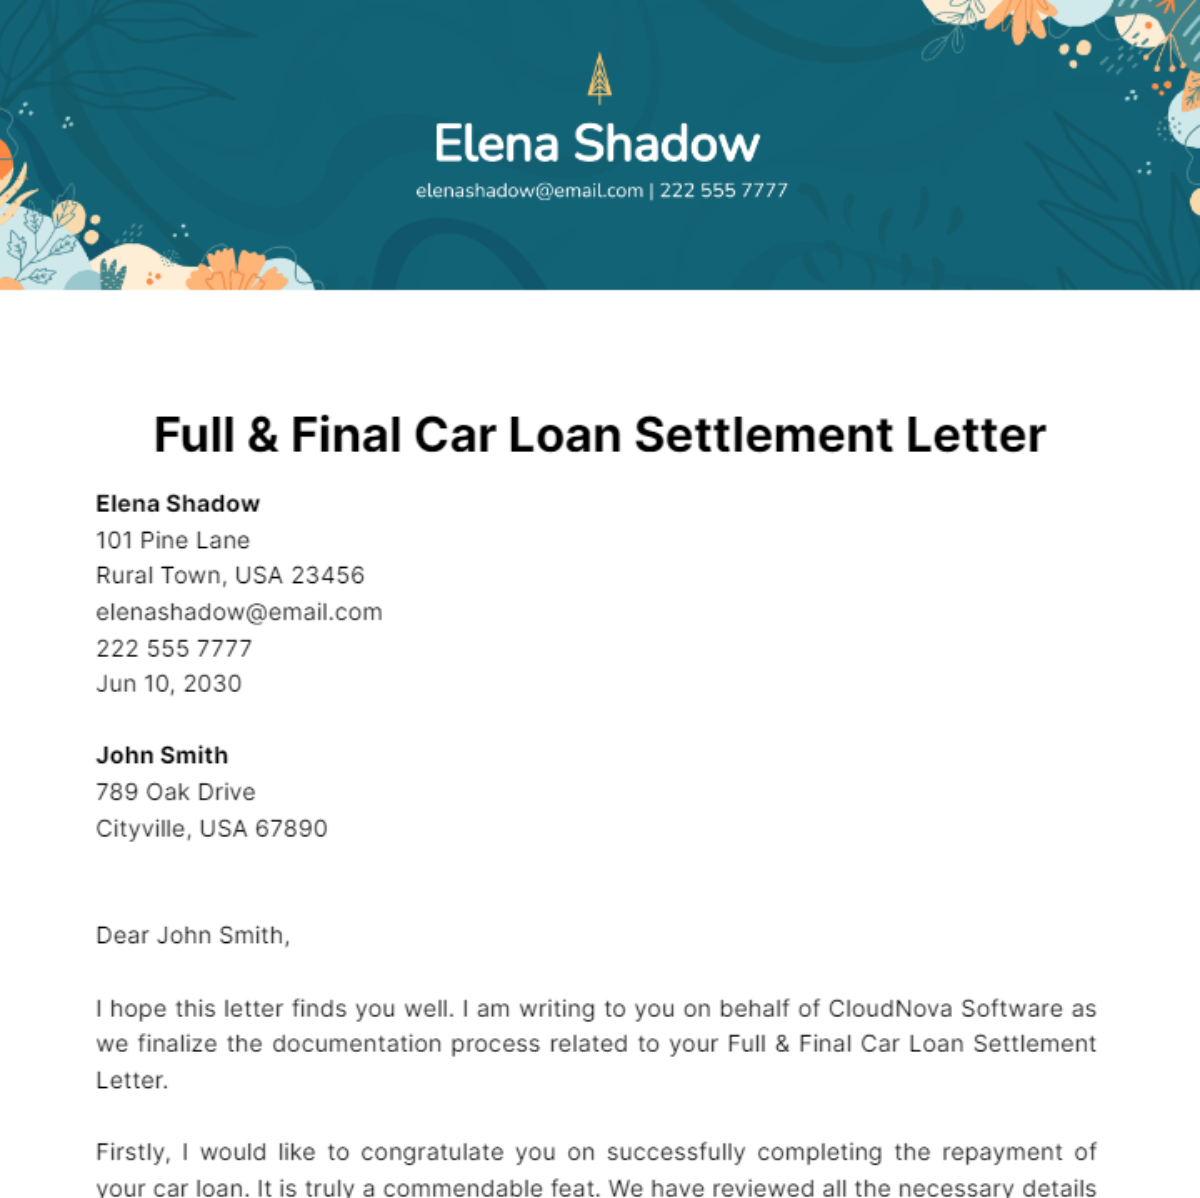 Full & Final Car Loan Settlement Letter Template